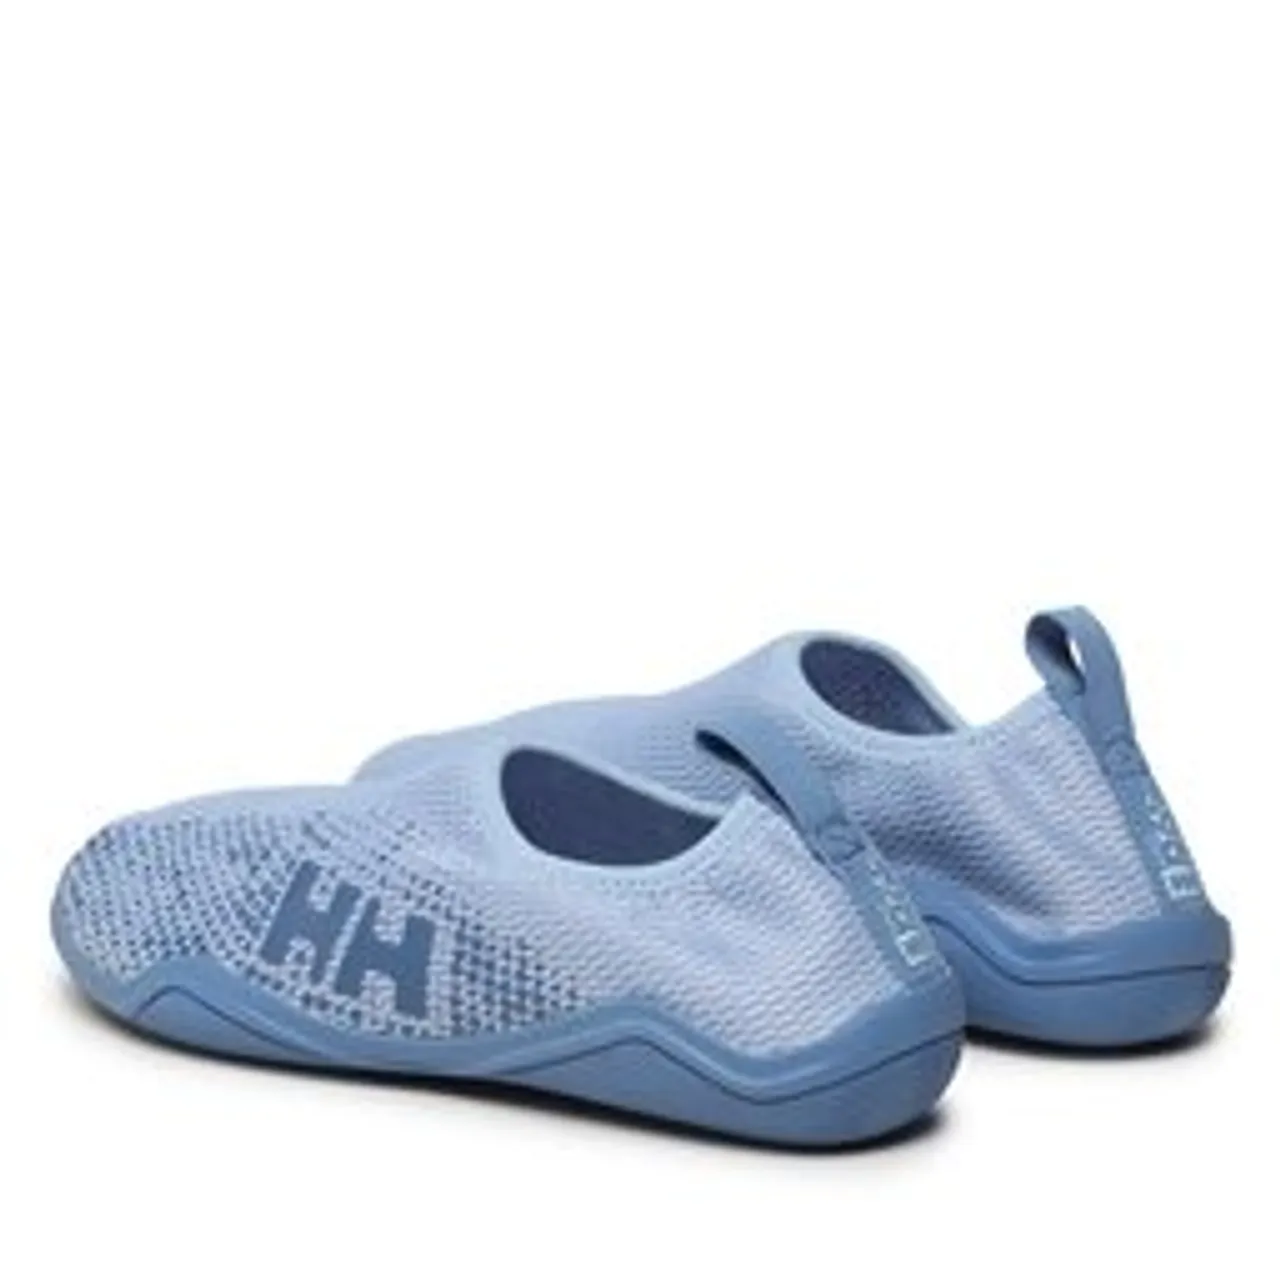 Schuhe Helly Hansen W Crest Watermoc 11556_627 Bright Blue/Azurite